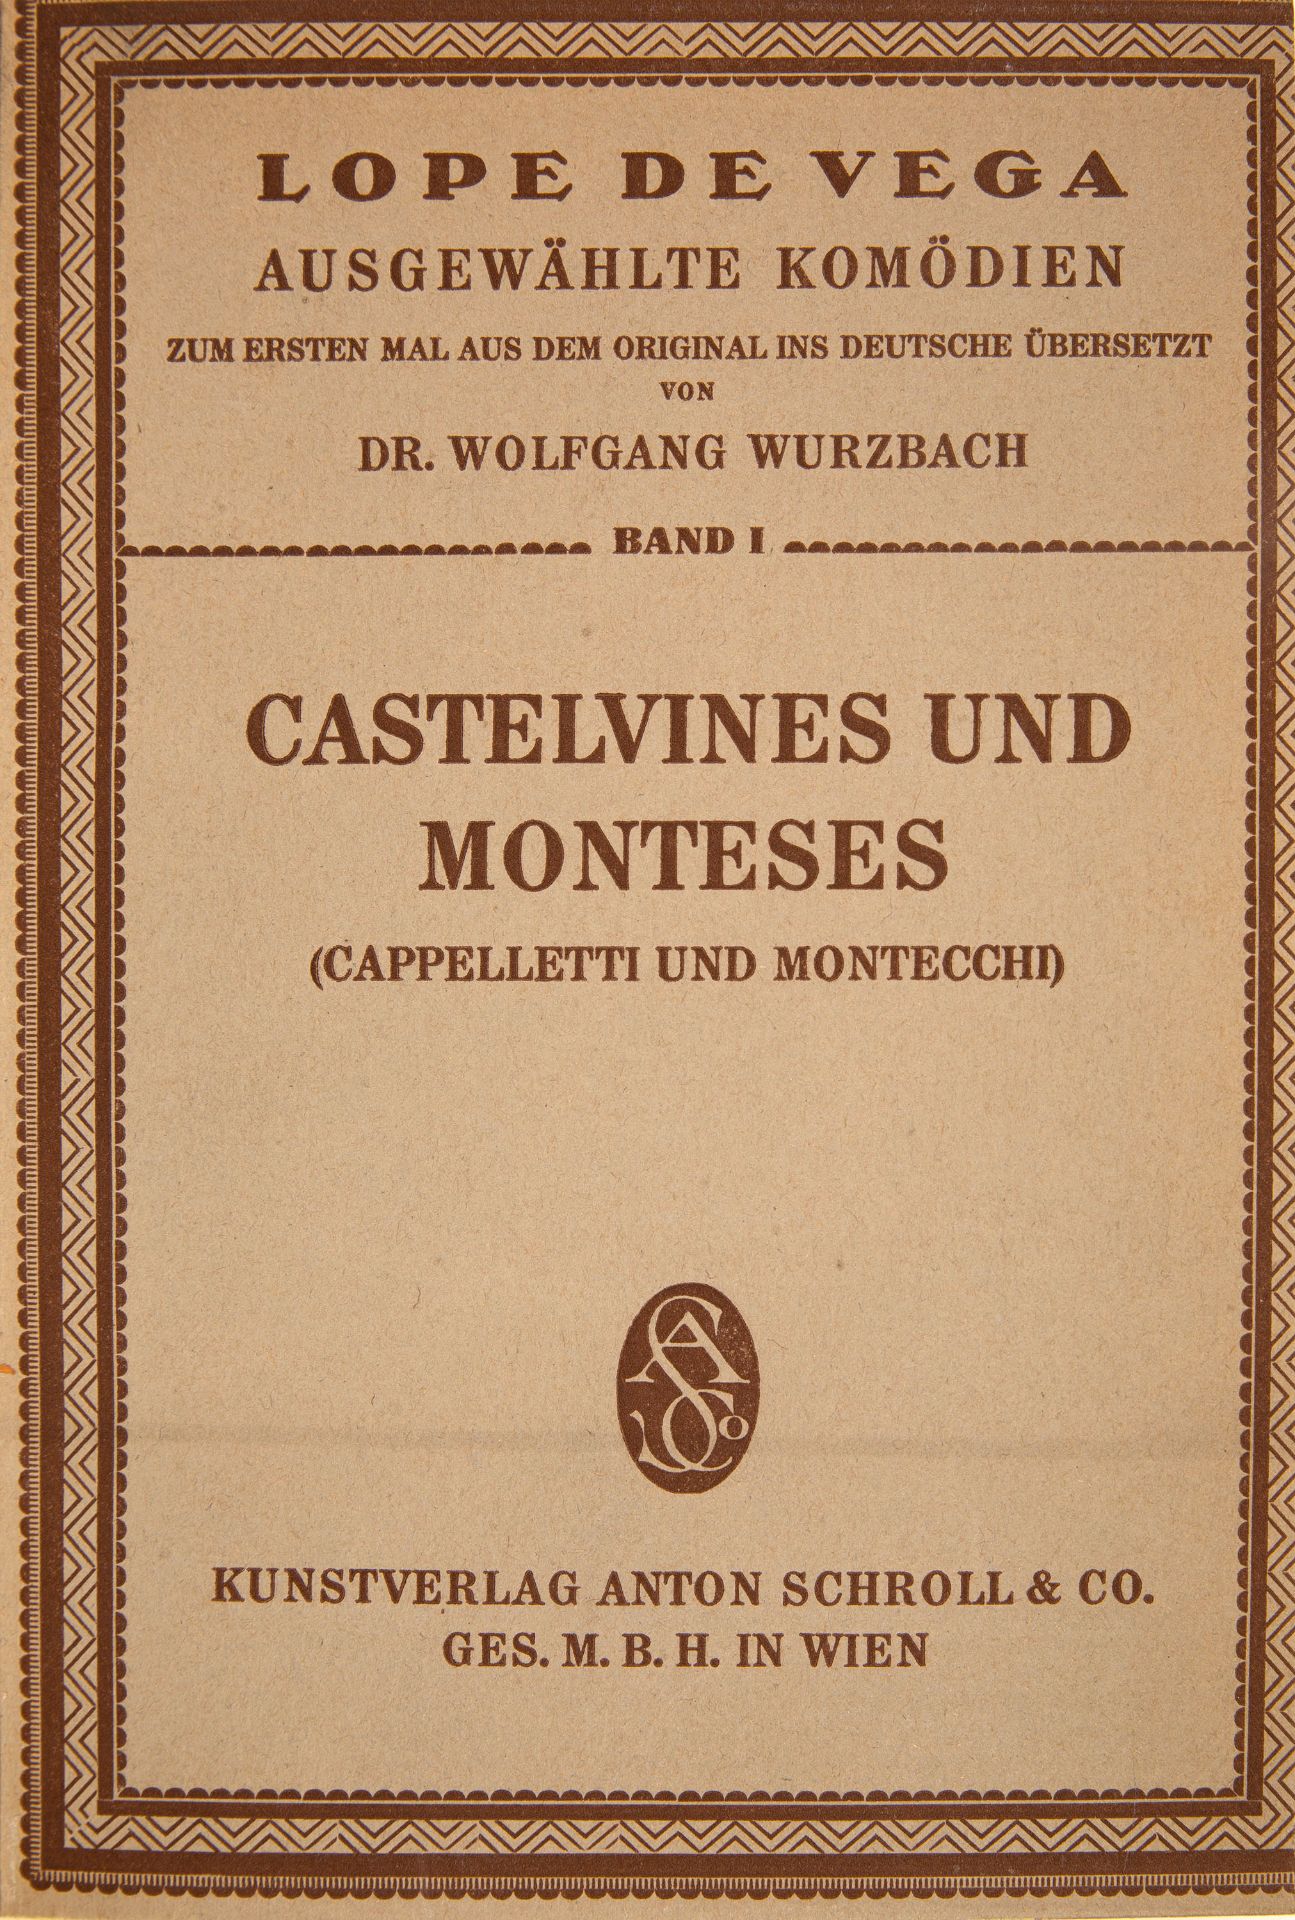 Lope de Vega, Ausgewählte Komödien. Übers. v. W. v. Wurzbach. 6 Teile in 2 Bden. Wien 1918.